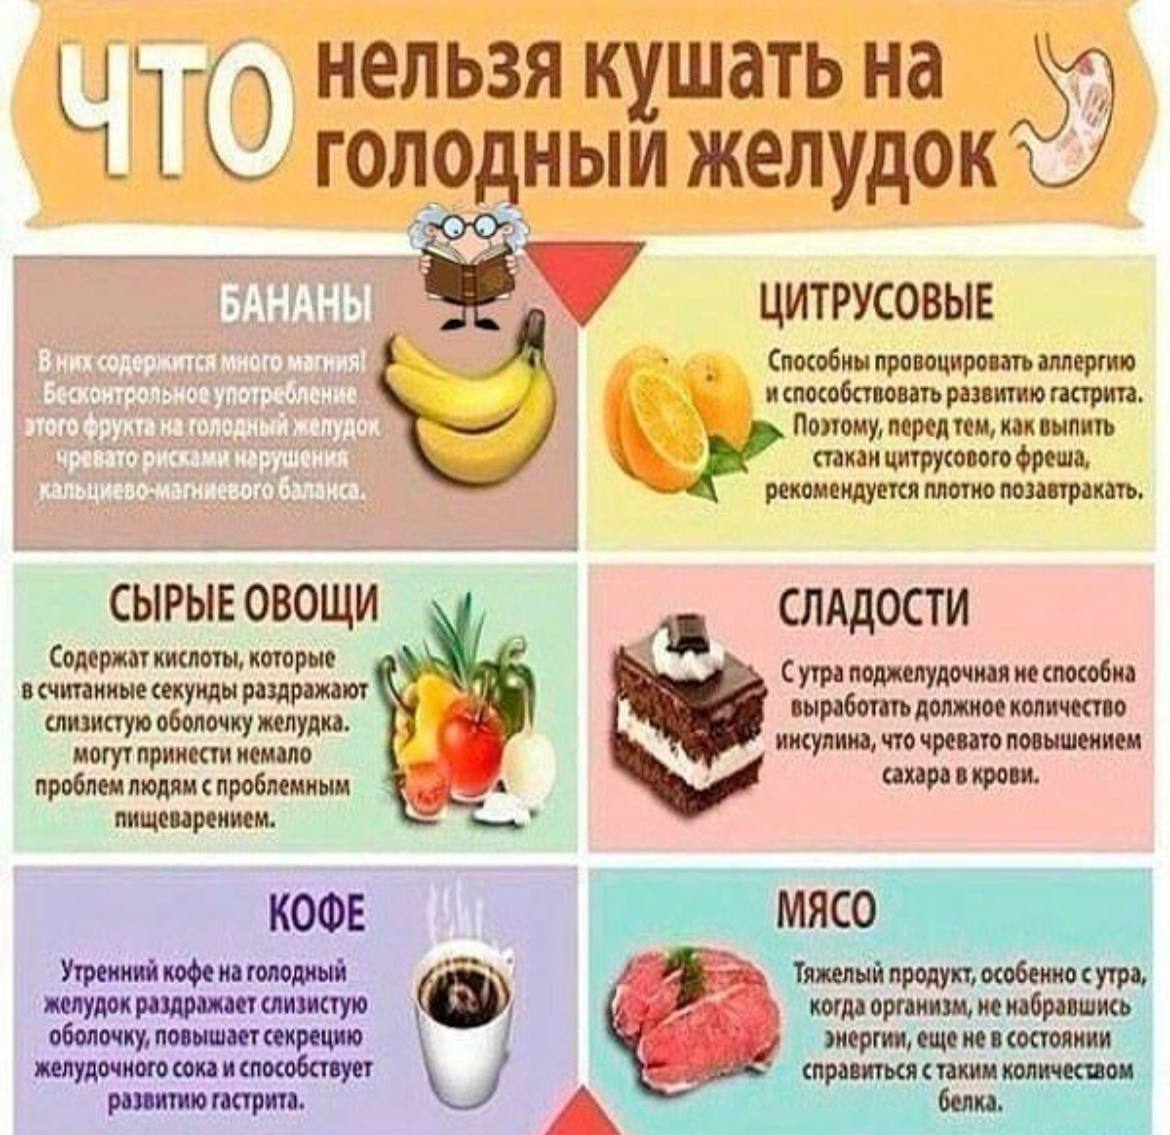 Ешь фрукты на голодный желудок